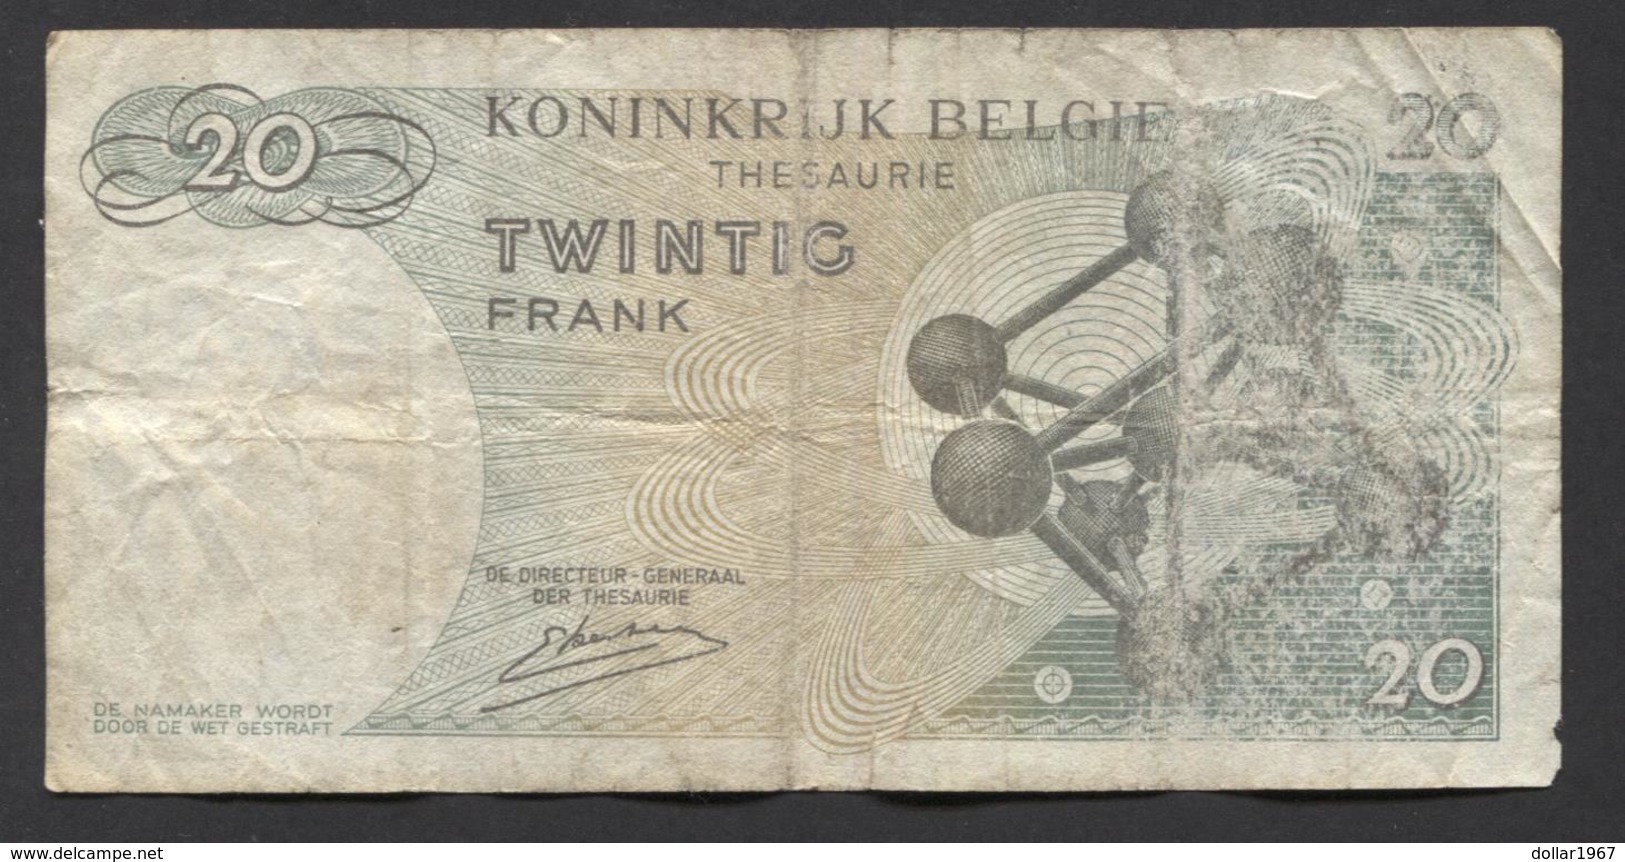 België Belgique Belgium 15 06 1964 -  20 Francs Atomium Baudouin. 3 T 6348216 - 20 Francos